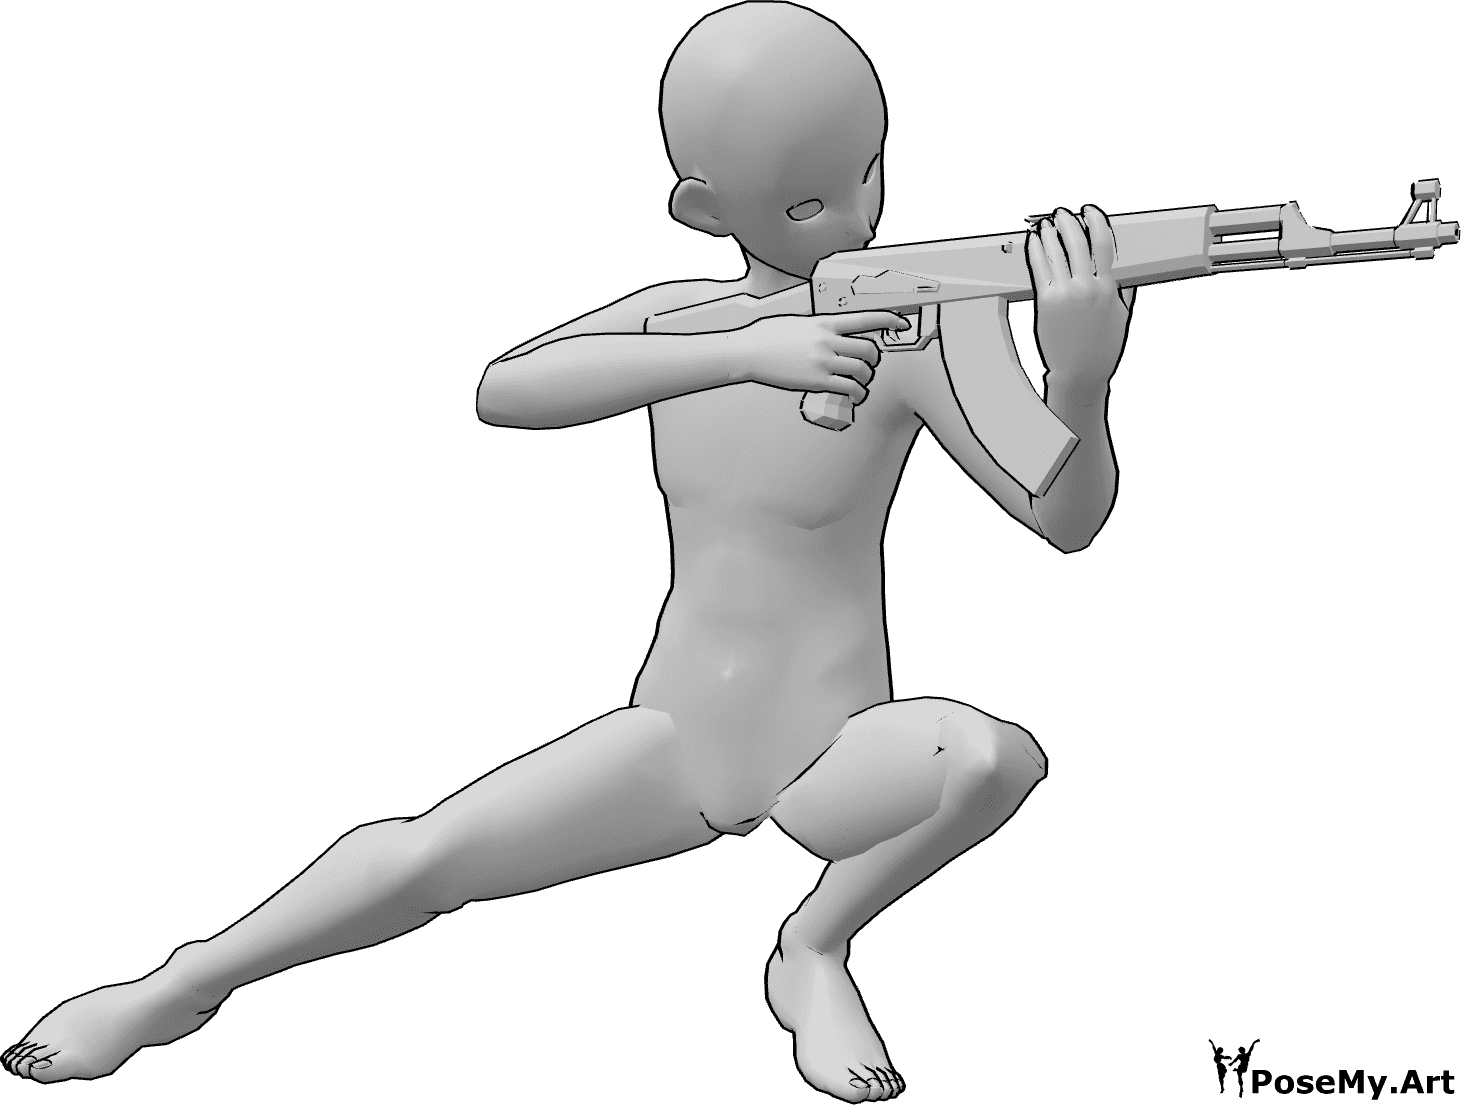 Referência de poses- Homem agachado em pose de pontaria - O homem anime está agachado e aponta a sua arma com as duas mãos